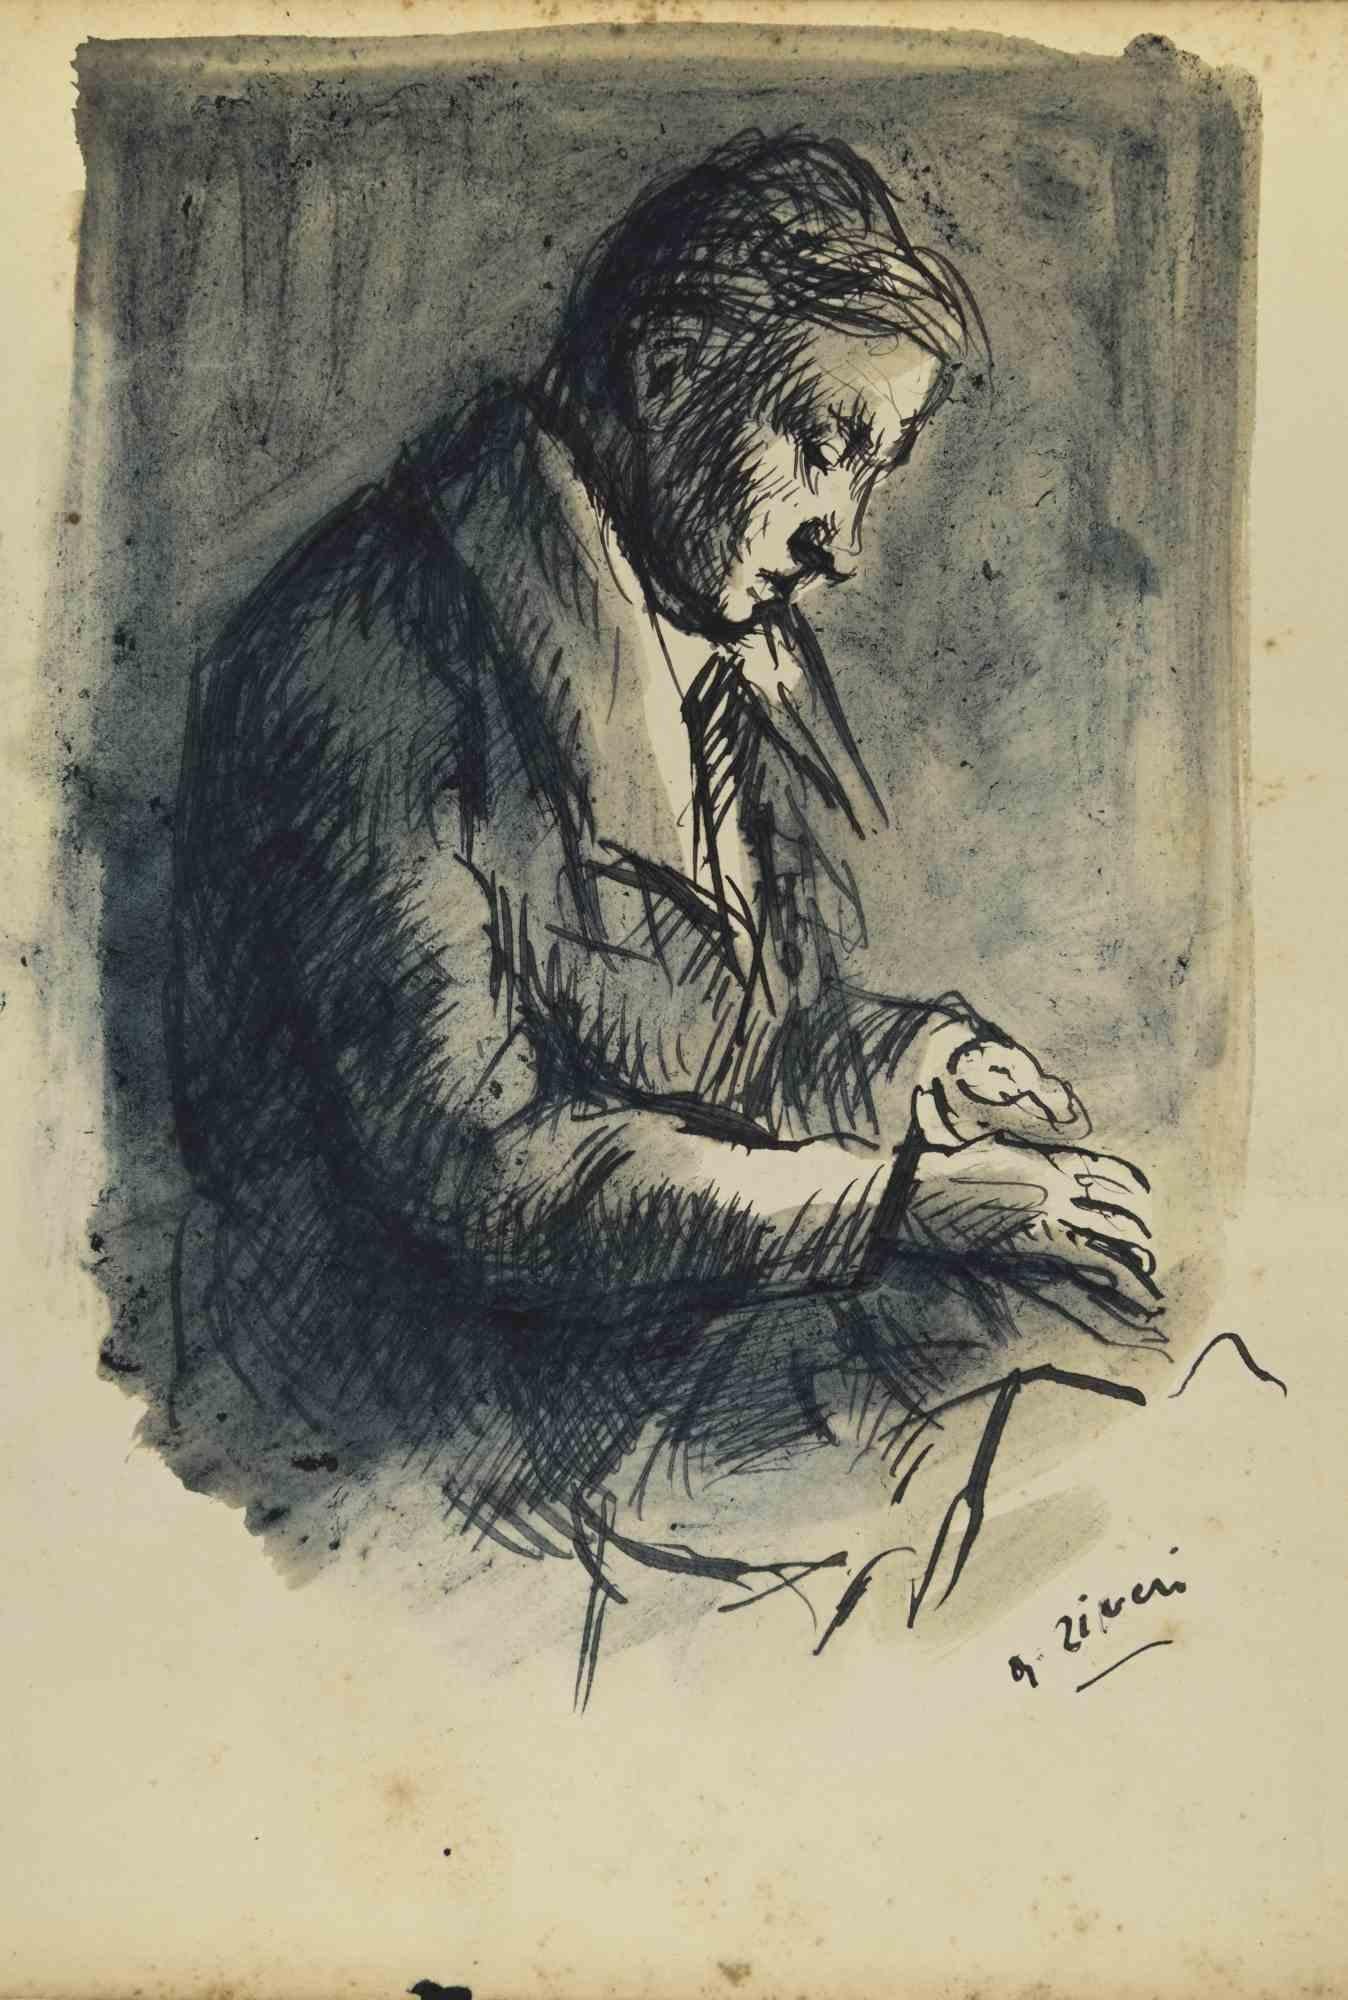 Writing Man ist eine Originalzeichnung von Alberto Ziveri aus den 1930er Jahren.

Tusche und Aquarell auf Papier.

Handsigniert.

In gutem Zustand

Das Kunstwerk wird durch geschickte Striche meisterhaft dargestellt.

Alberto Ziveri (Rom, 1908 -